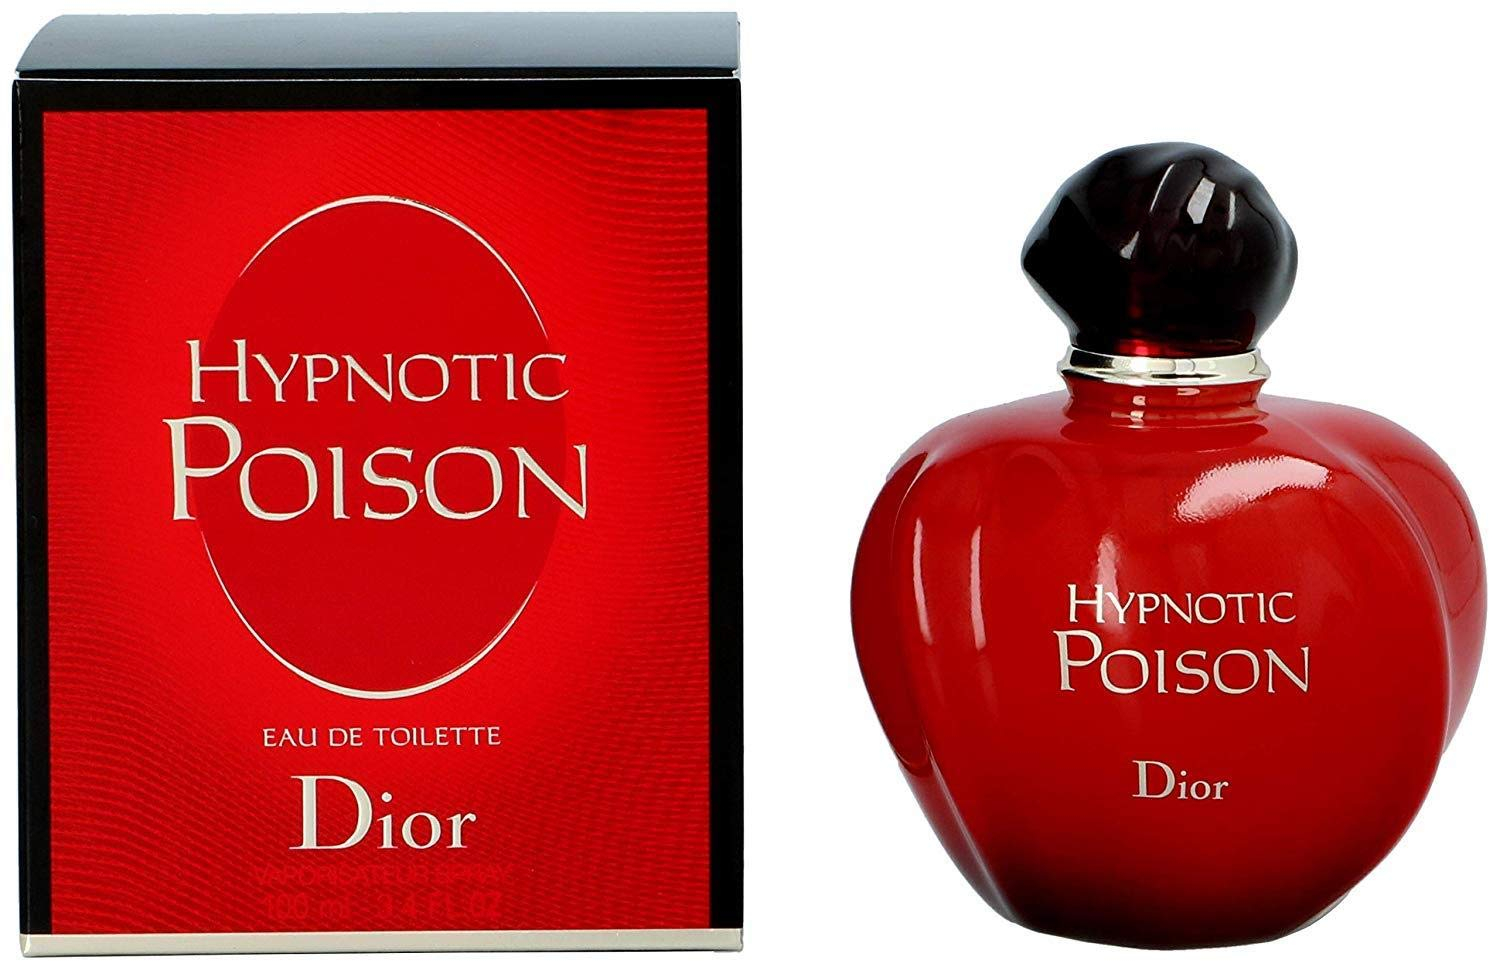 Dior (Christian Dior) Hypnotic Poison Eau de Toilette pentru femei 100 ml